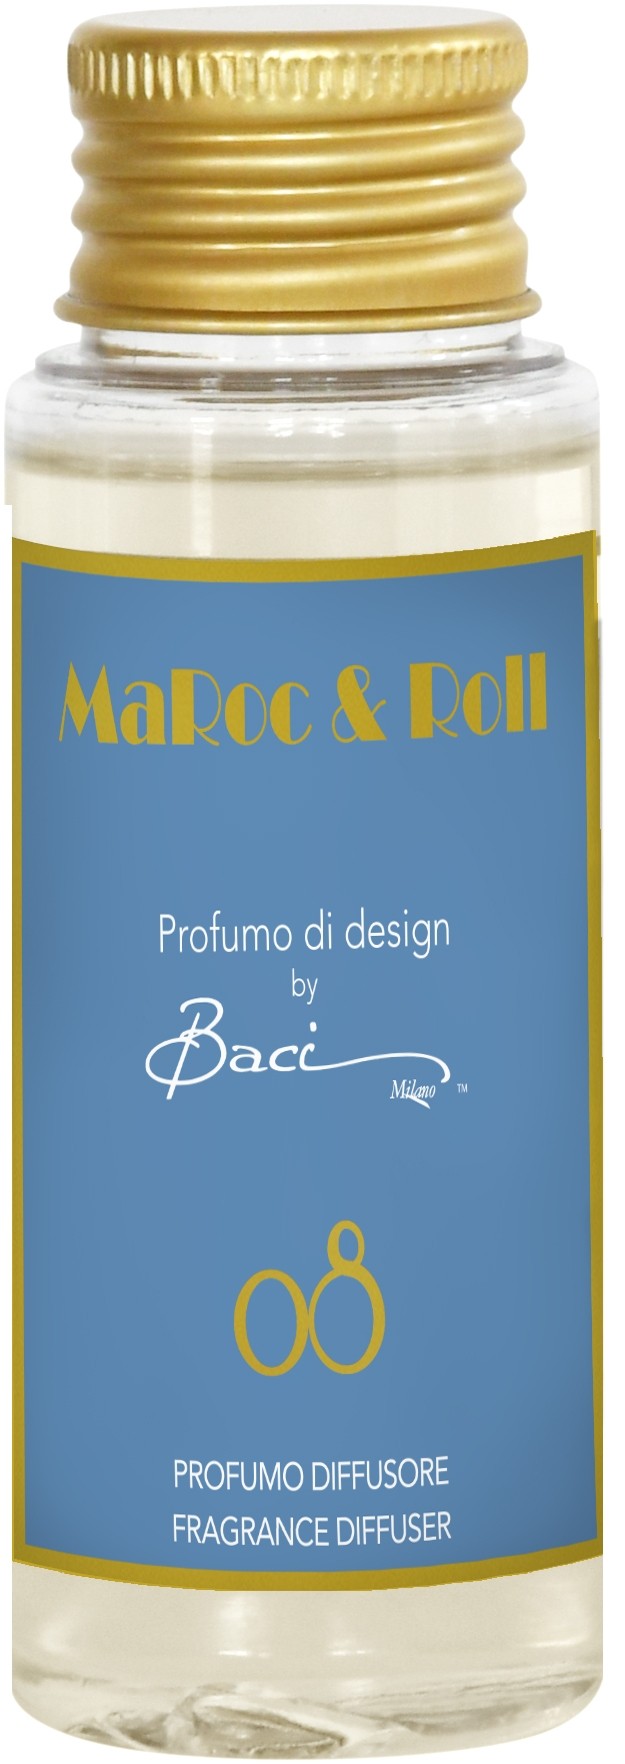 Fragranza Diffusore 50 ml MaRoc & Roll 08 REF50.08